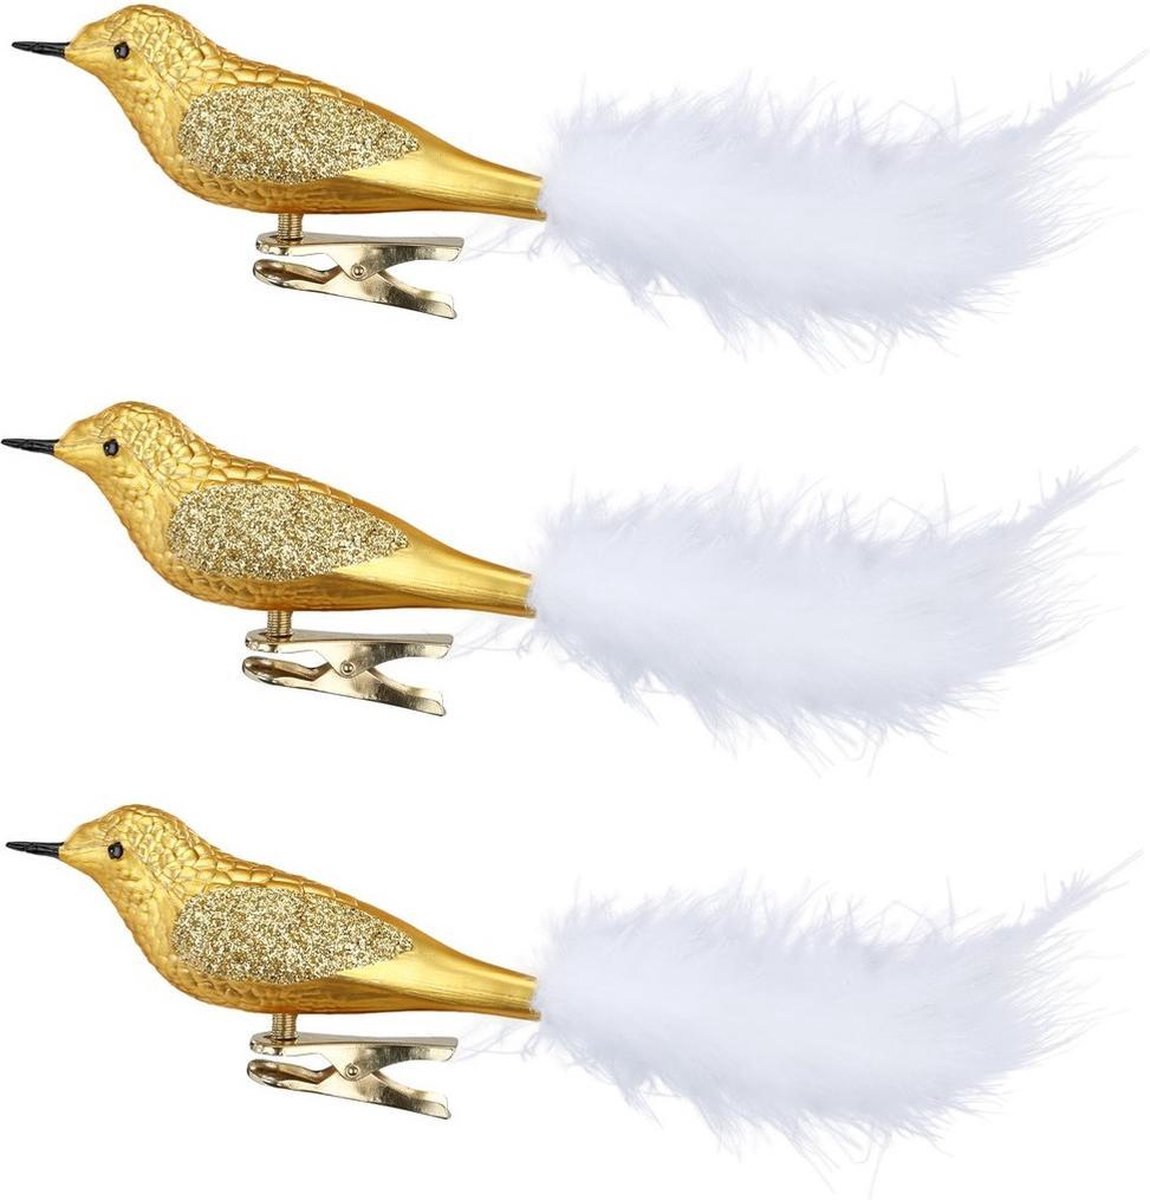 9x stuks decoratie vogels op clip goud 20 cm - Decoratievogeltjes/kerstboomversiering/bruiloftversiering